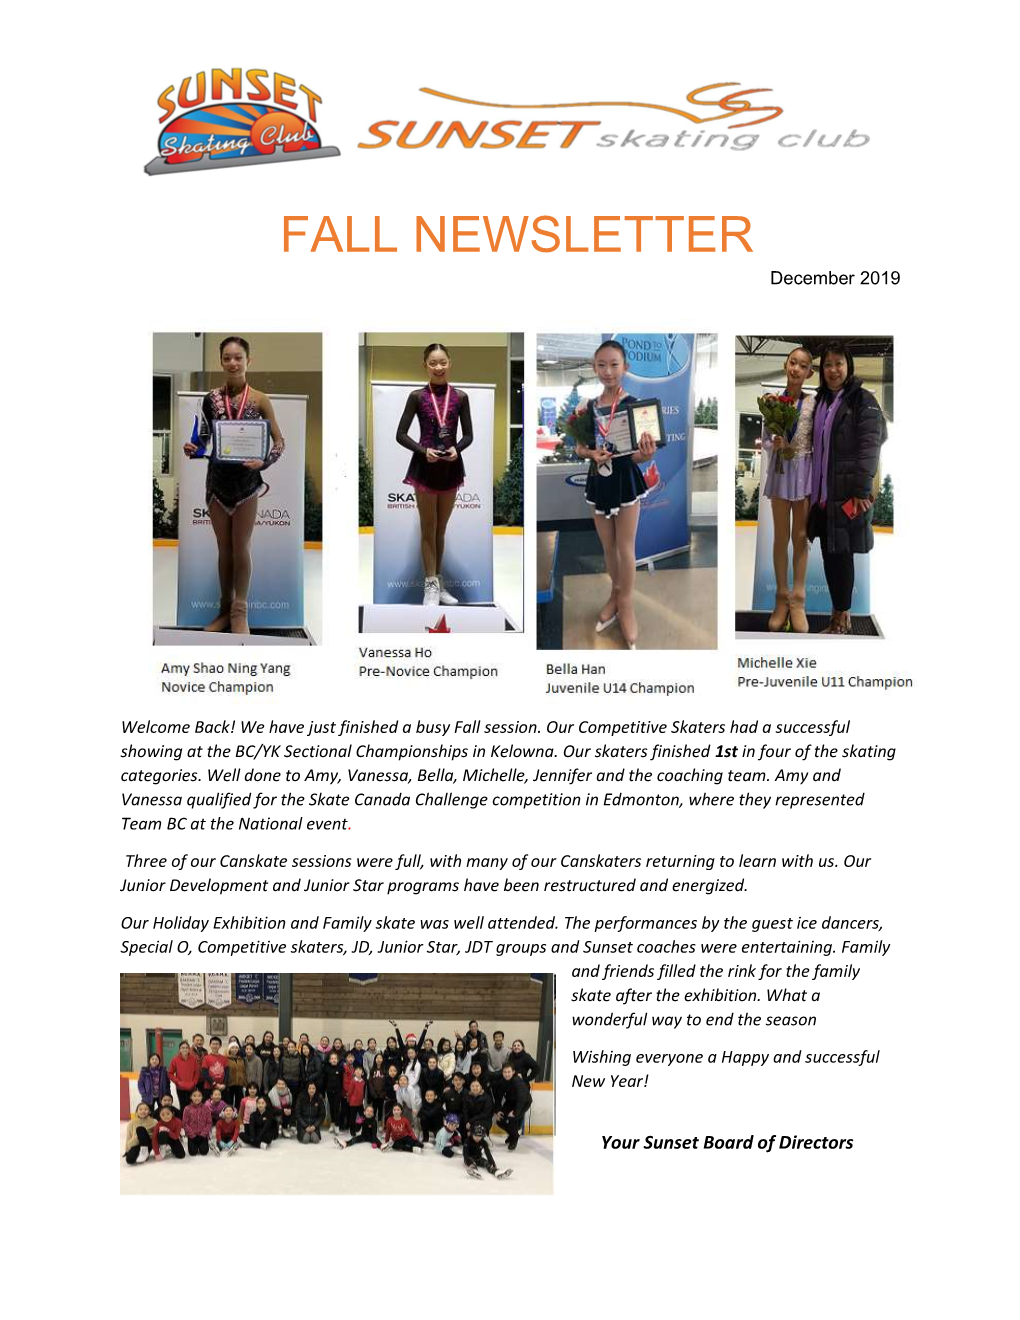 2019 Fall Newsletter